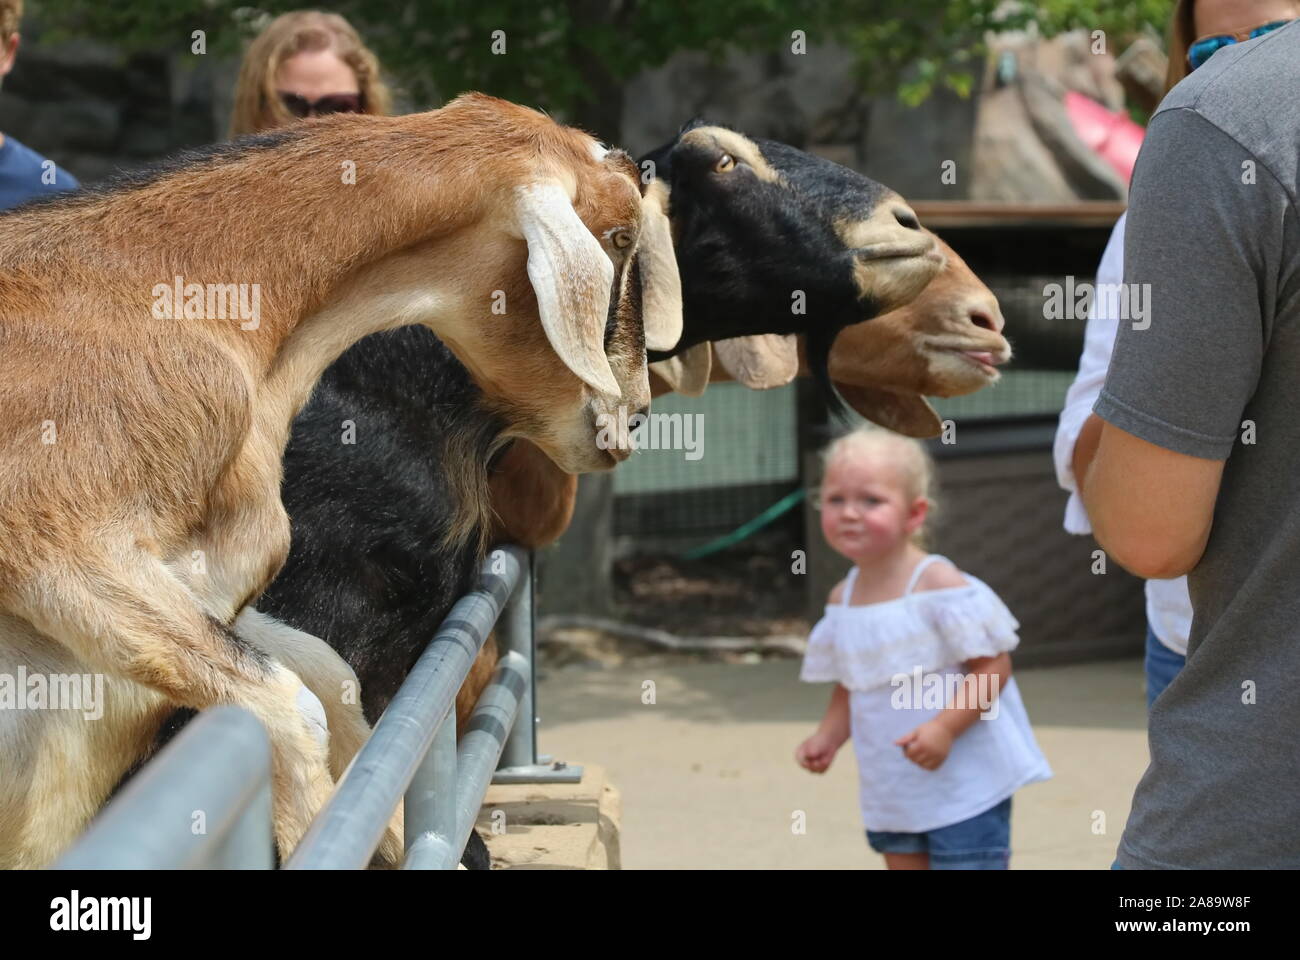 Madison, WI / USA - 5 août 2018 : Curieux petit caucasian girl à regarder les chèvres à un zoo peting penché au-dessus de la barrière Banque D'Images